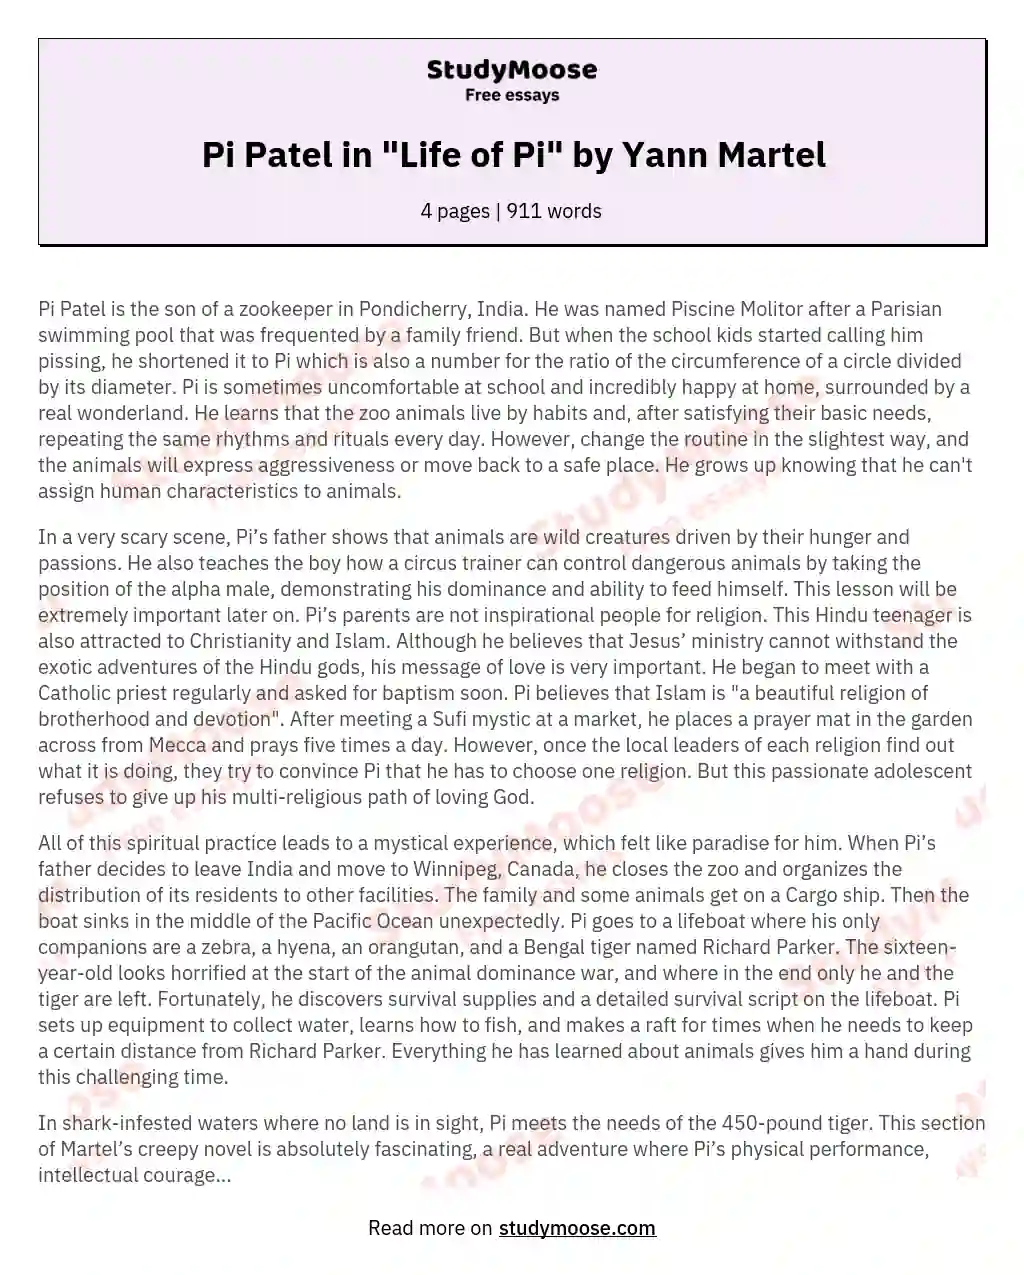 Pi Patel in "Life of Pi" by Yann Martel